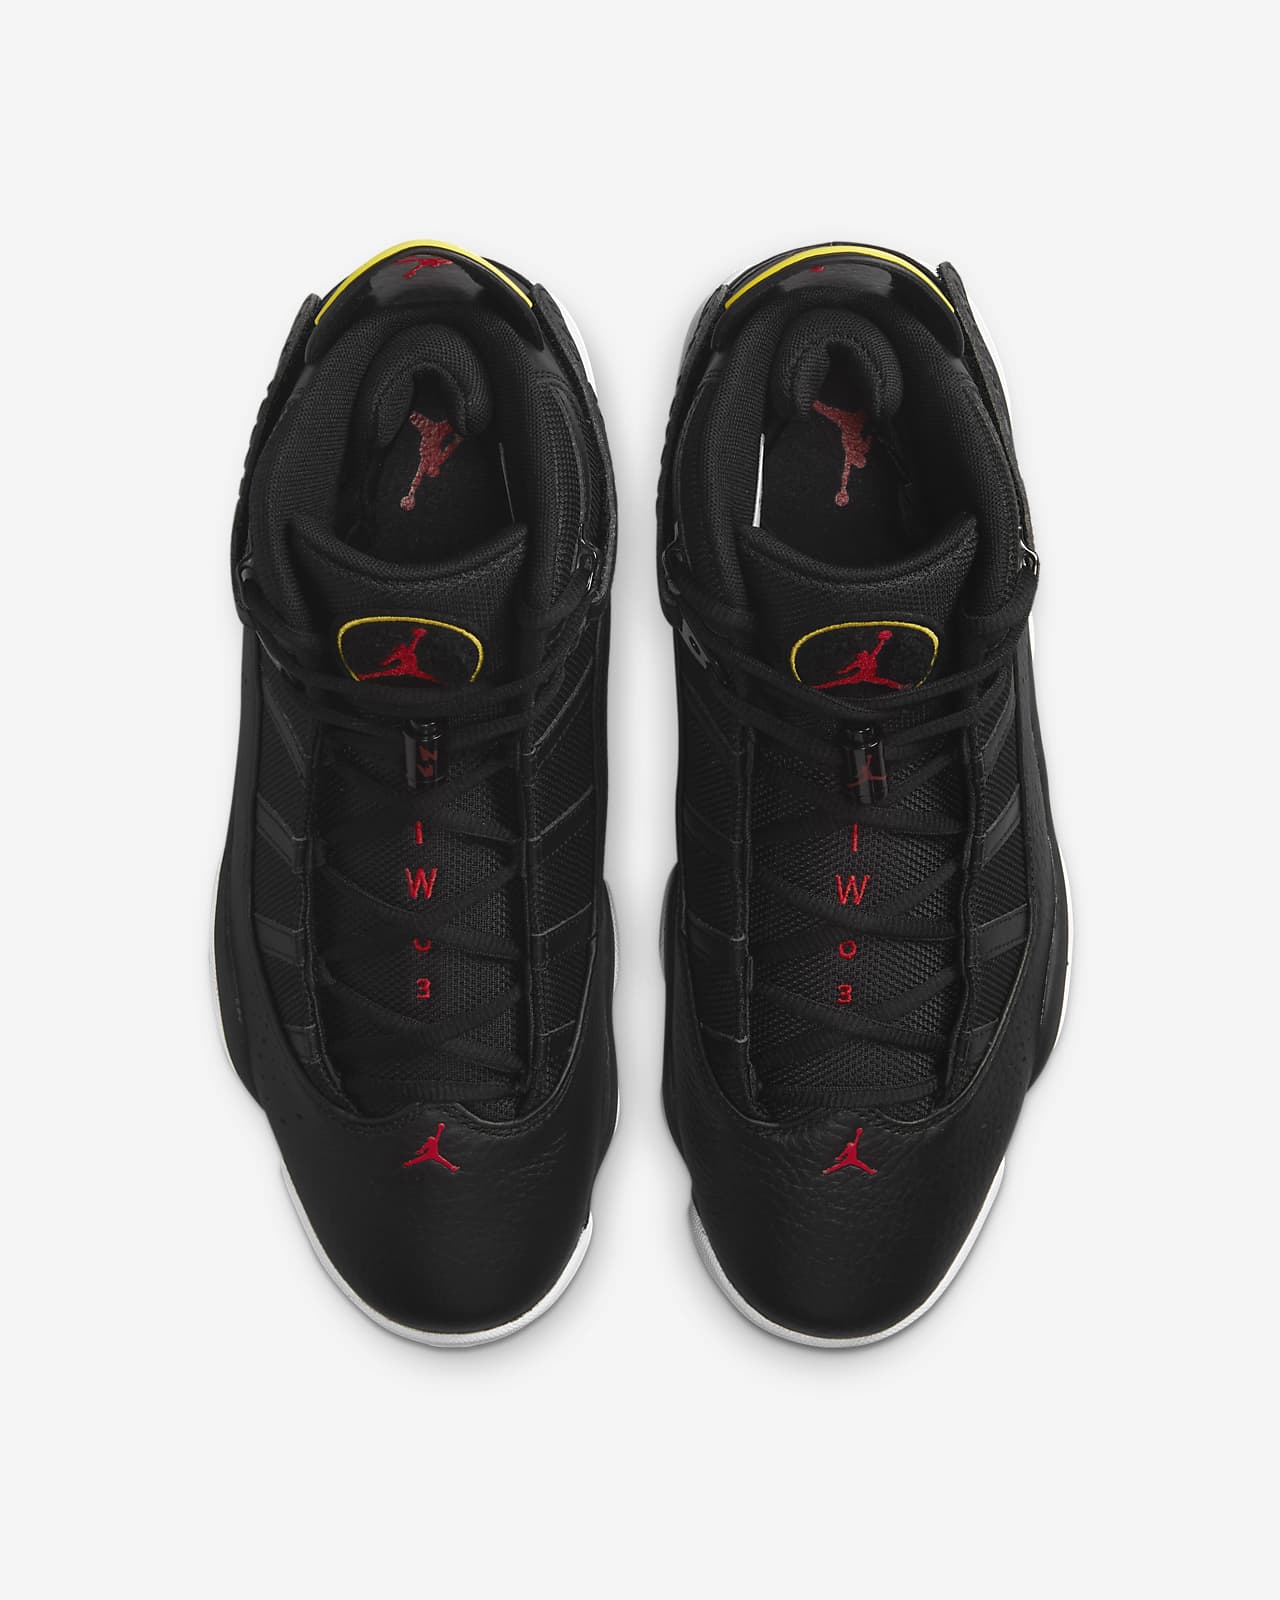 Jordan 6 Rings men's nike air jordan vi shoes Men's Shoes. Nike SA